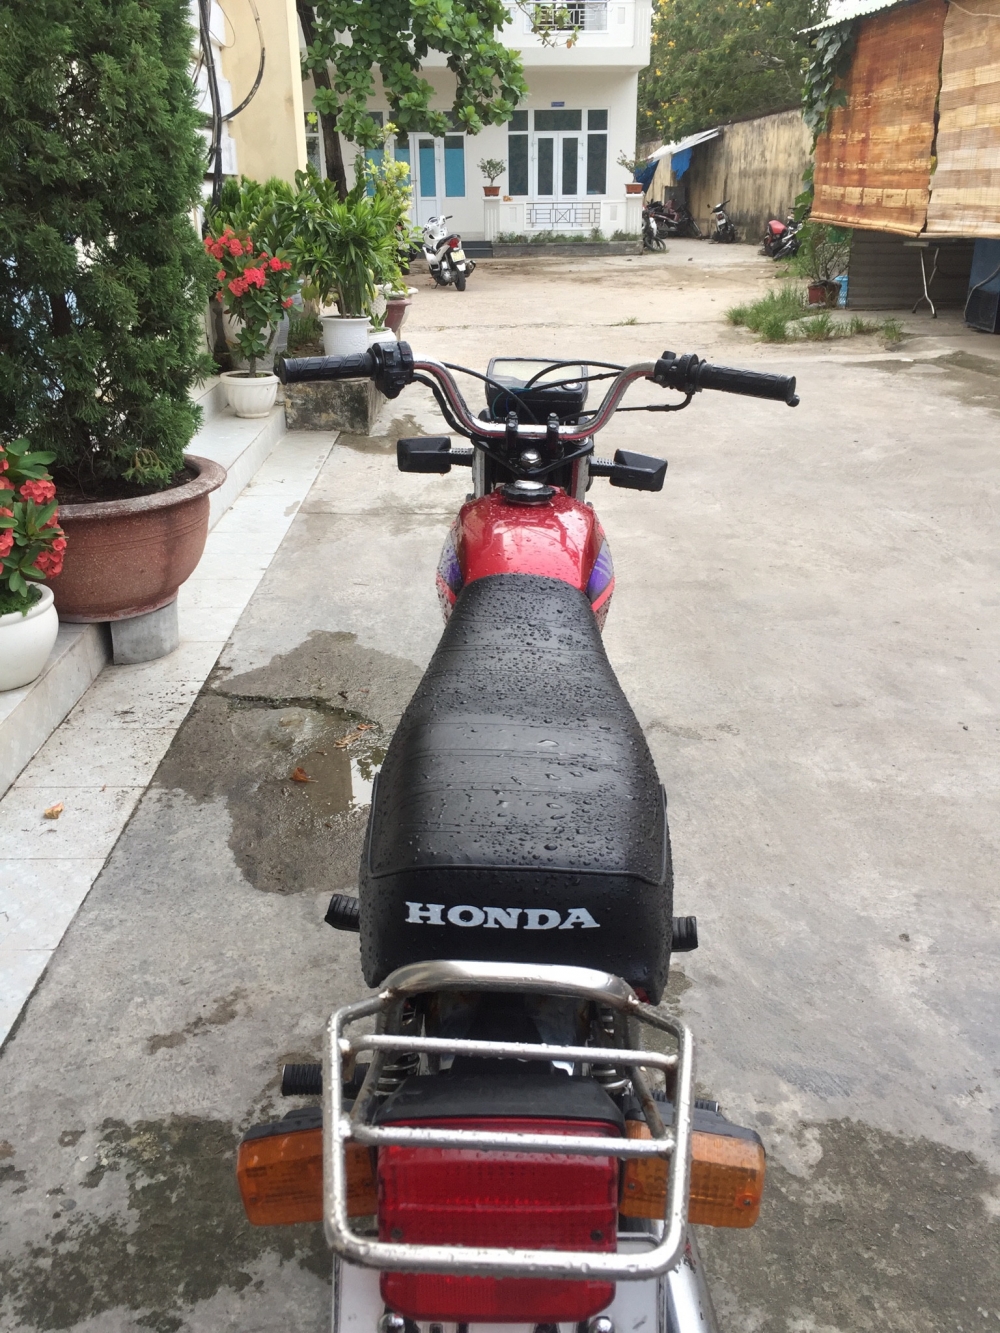 Honda win indo nguyen ban may manh boc loi xang - 2